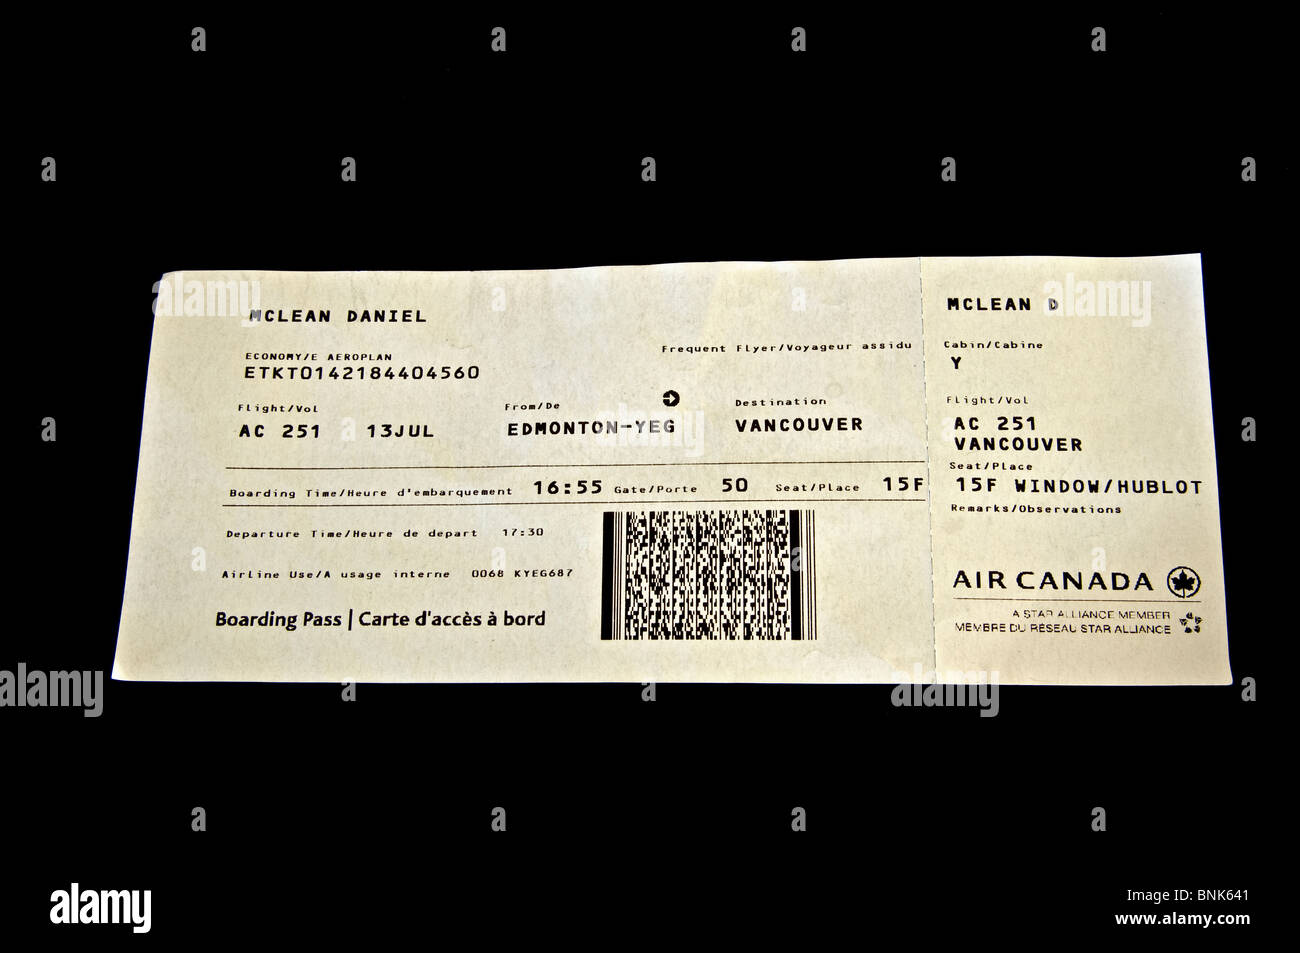 Plane ticket Stock Photo